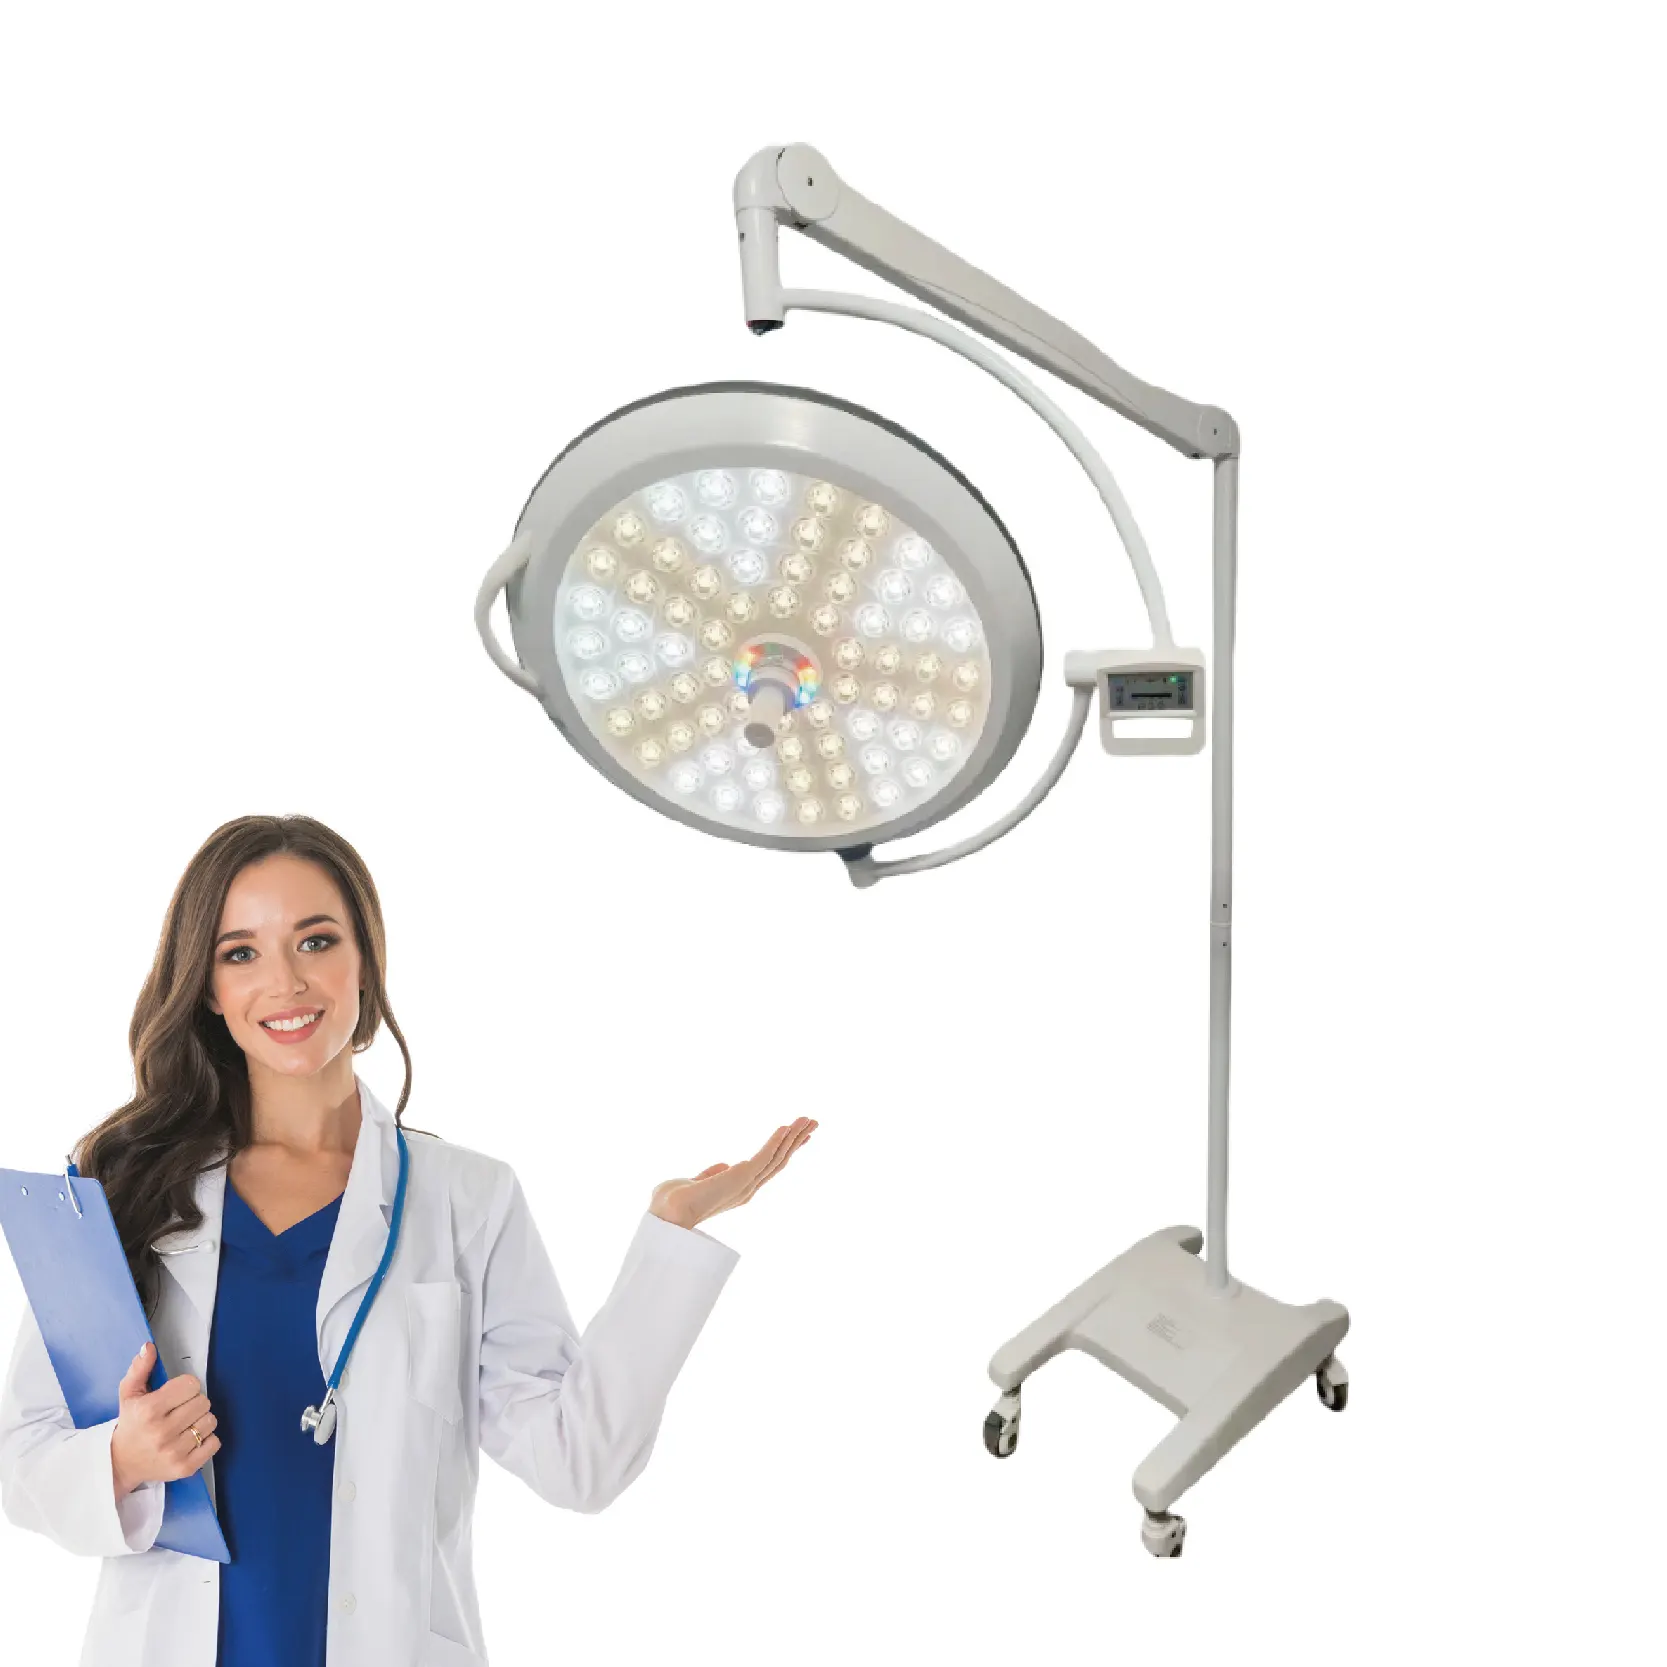 Lampe LED mobile chirurgicale à double dôme 160000 lux livrée avec poignée stérilisable et contrôle numérique